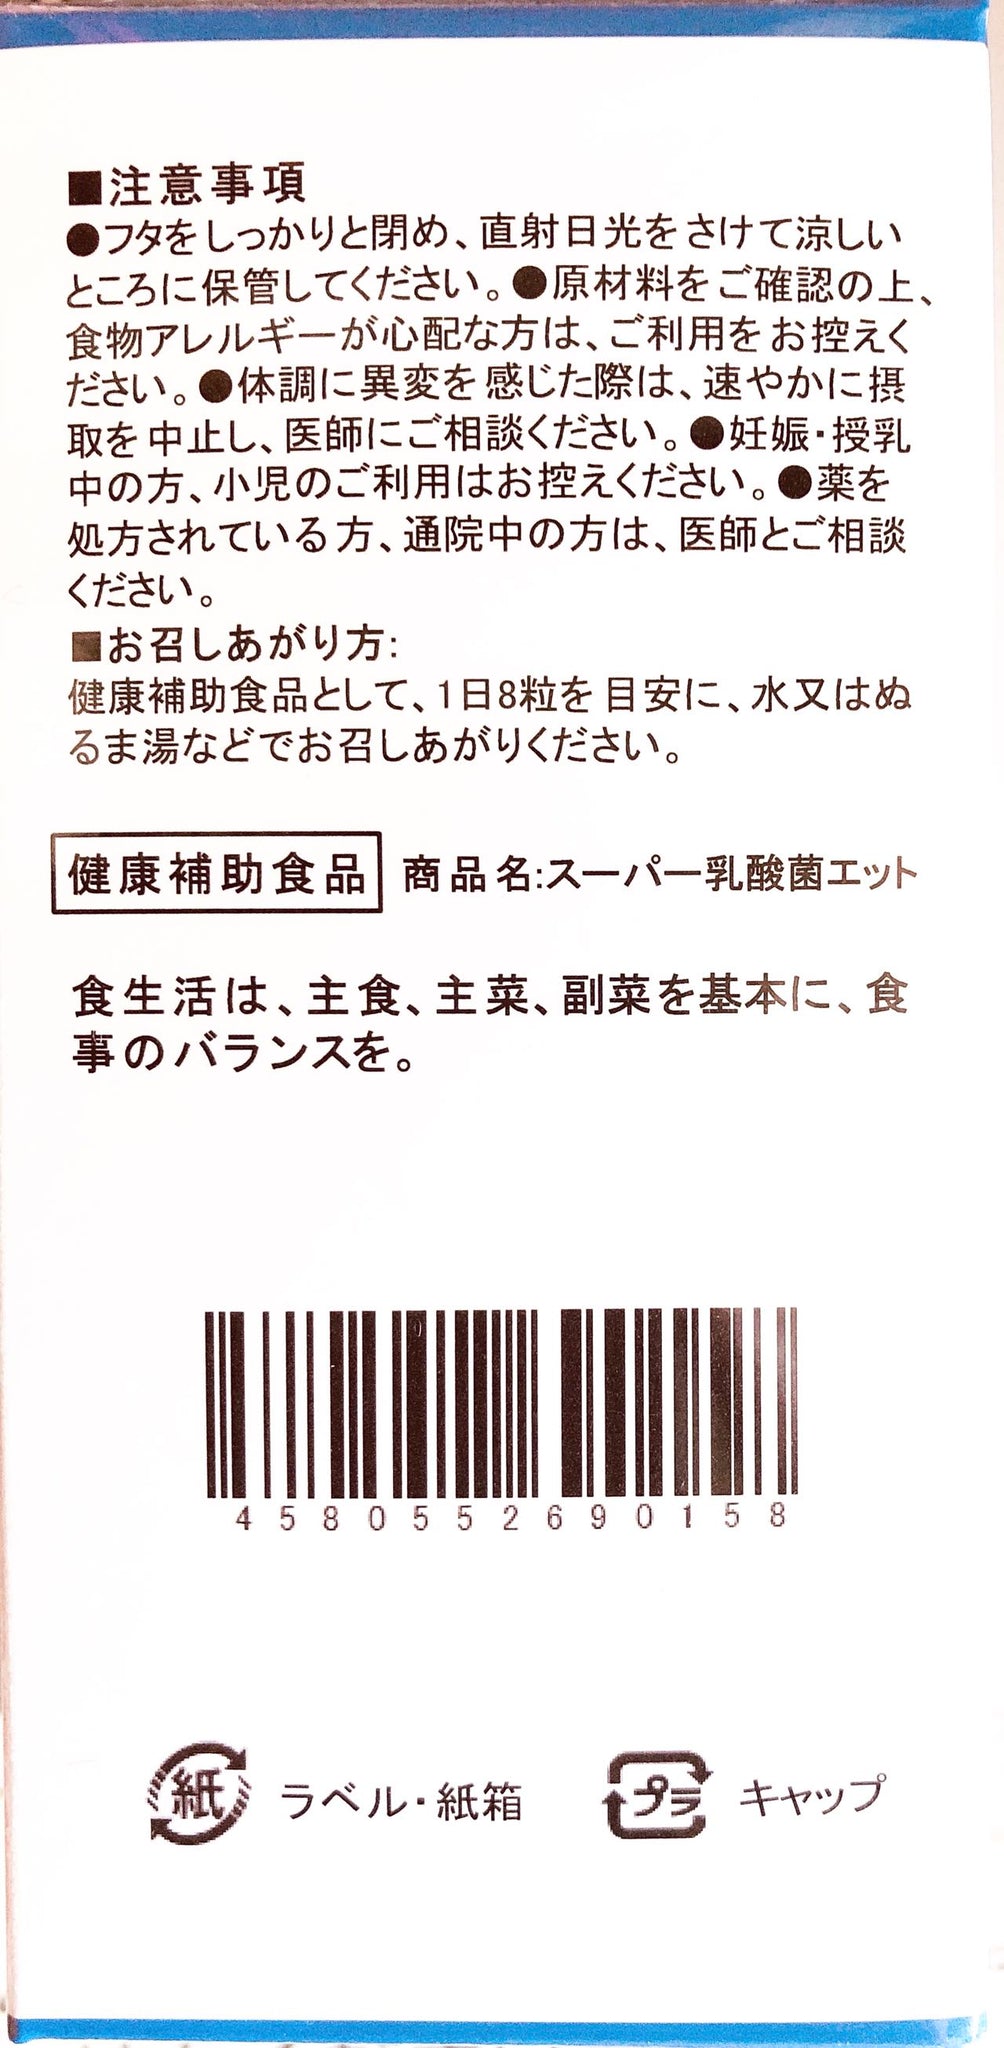 八念堂Ⓡ スーパー乳酸菌ET (ダイエットサプリ)240粒